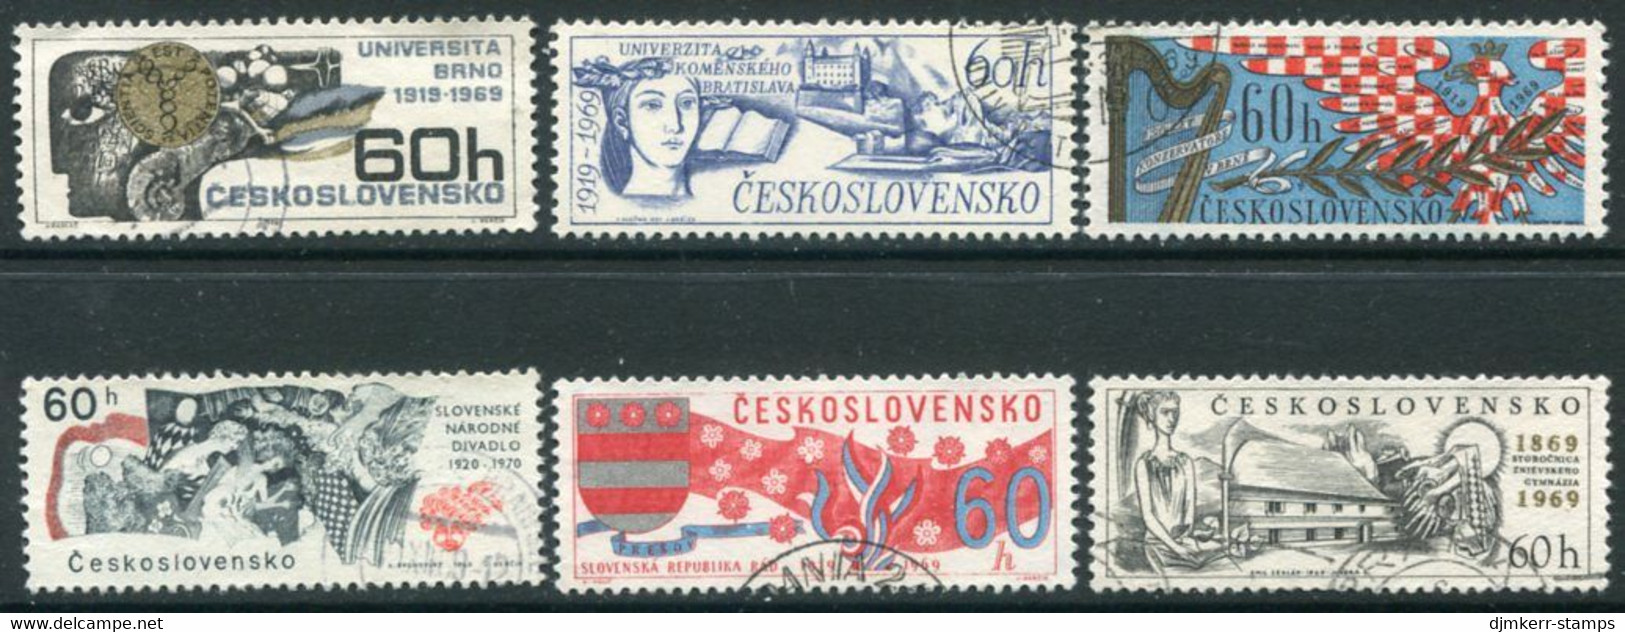 CZECHOSLOVAKIA 1969 Scientific And Cultural Anniversaries Used  Michel 1860-65 - Gebruikt